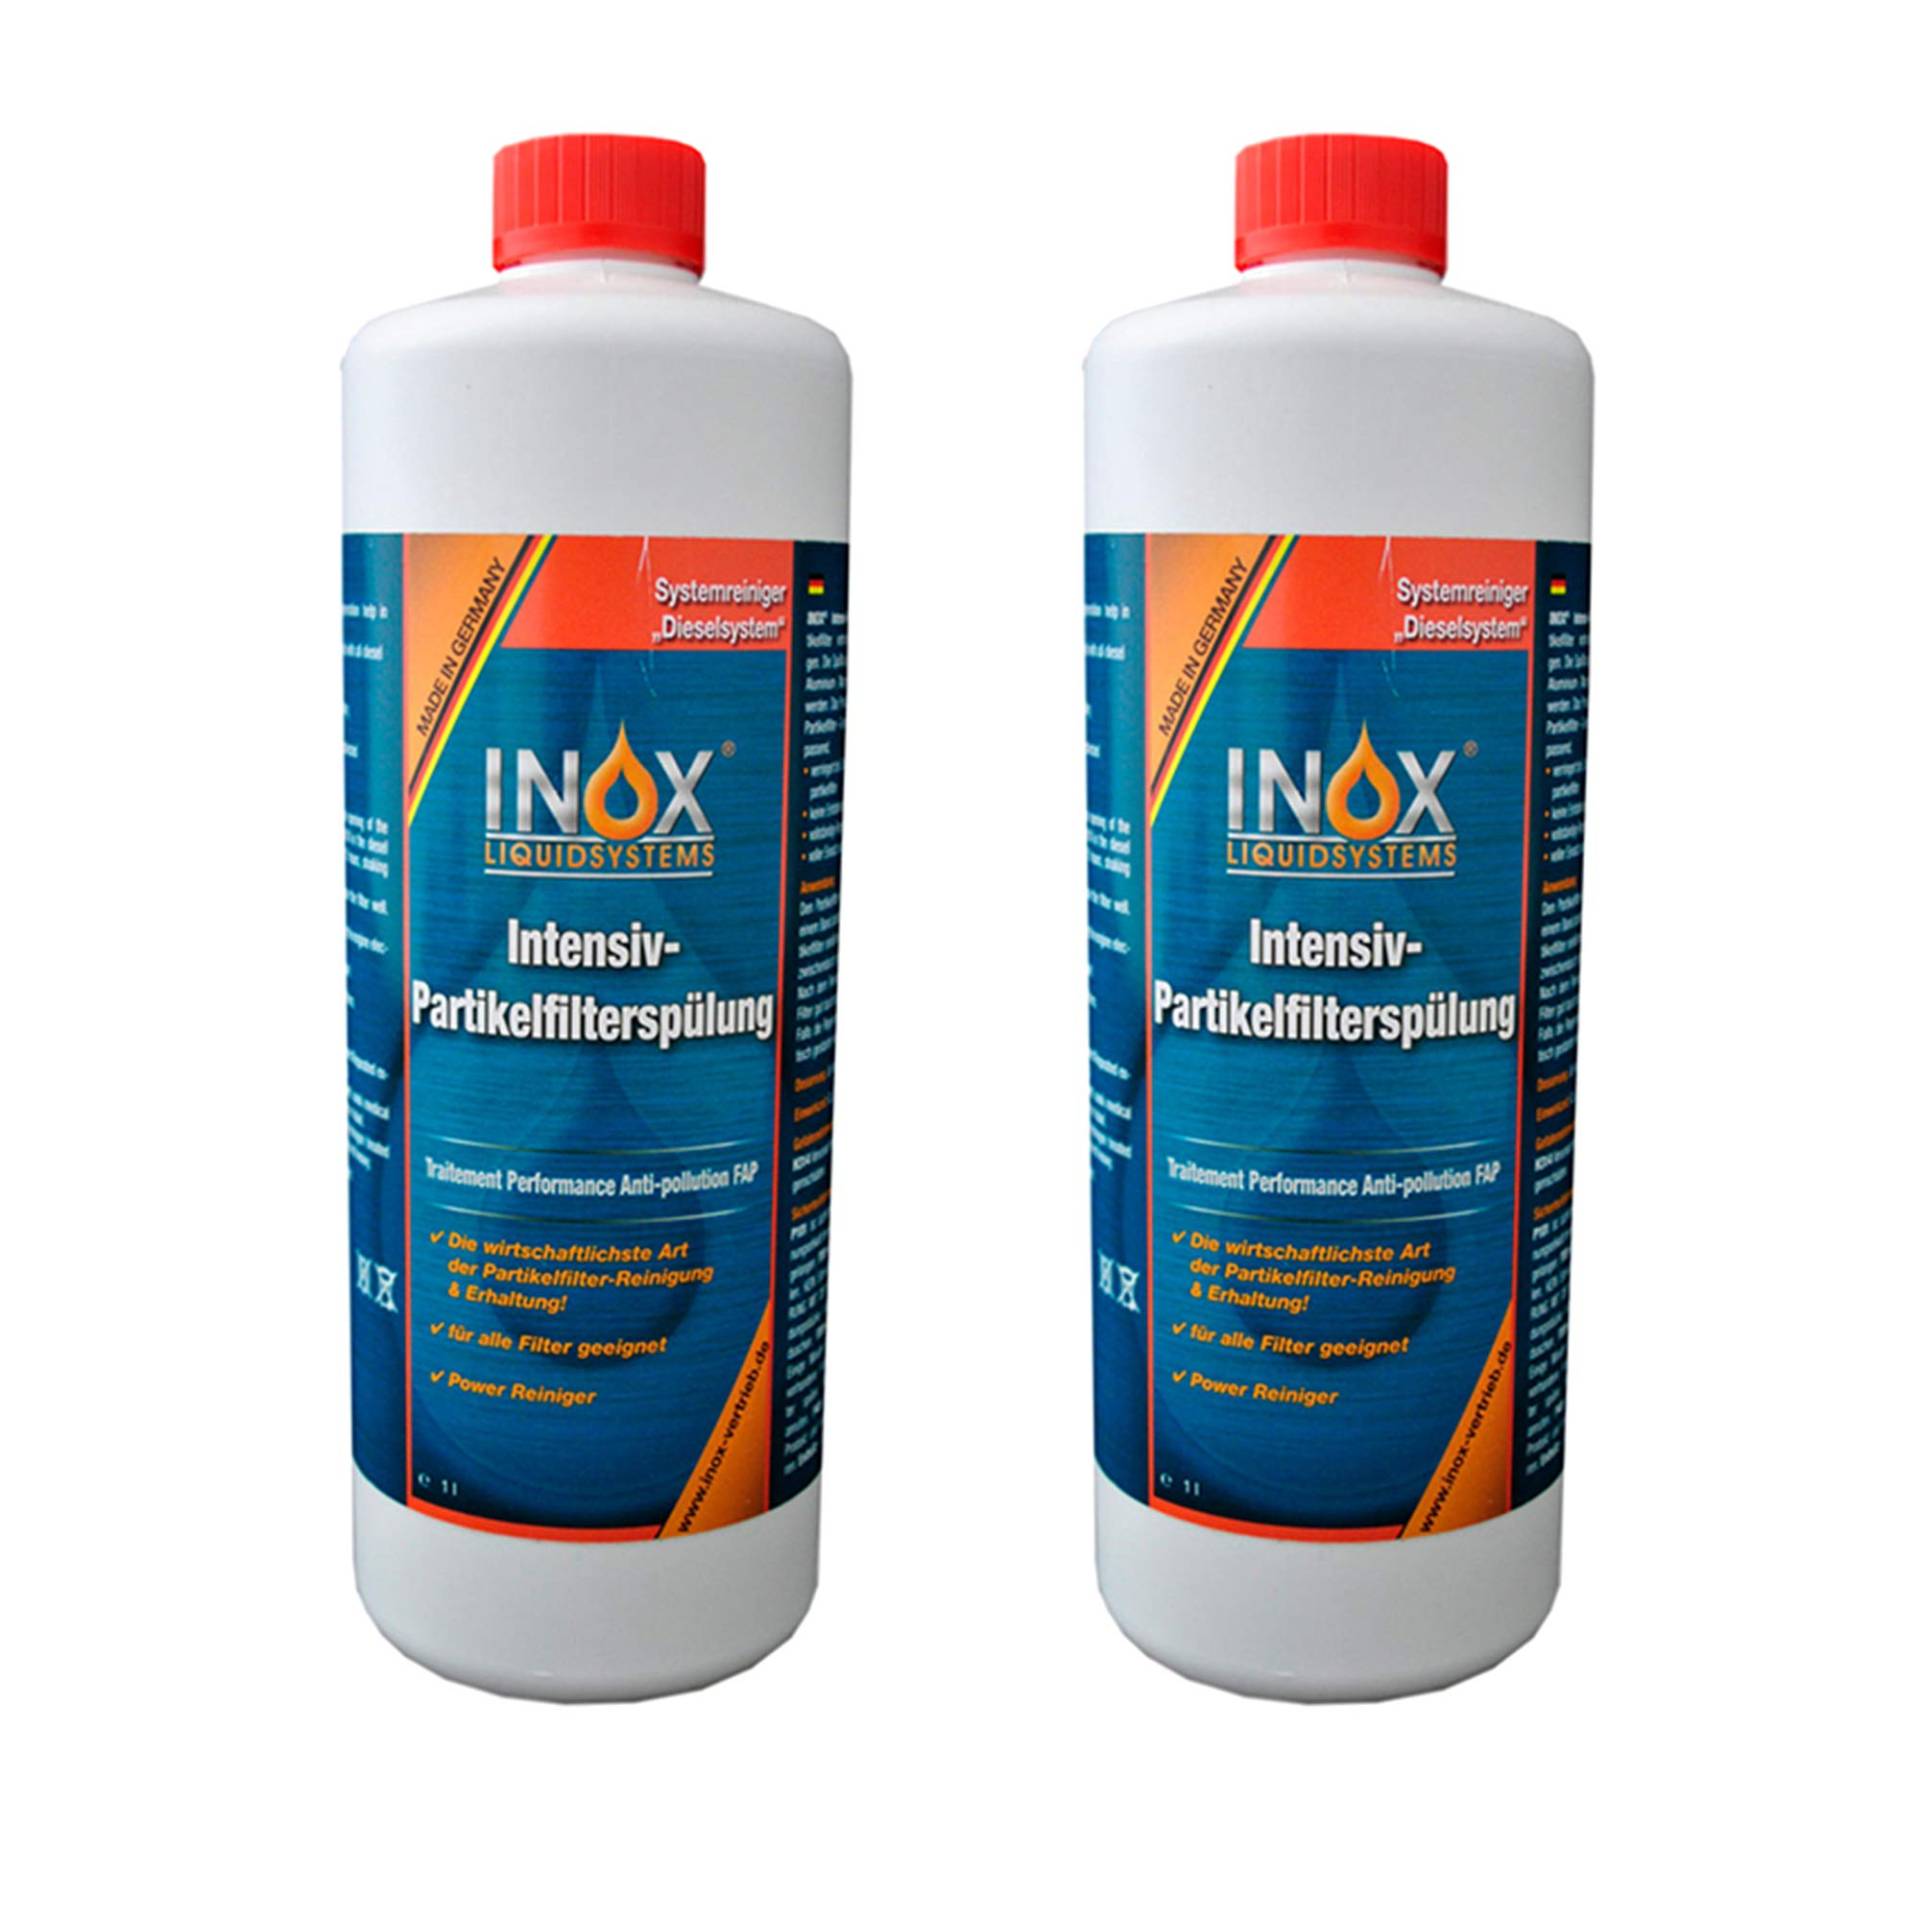 INOX® Intensiv Dieselpartikelfilter-Spülung, 2 x 1 Liter - Additiv für alle Dieselsysteme mit Partikelfilter von INOX-LIQUIDSYSTEMS